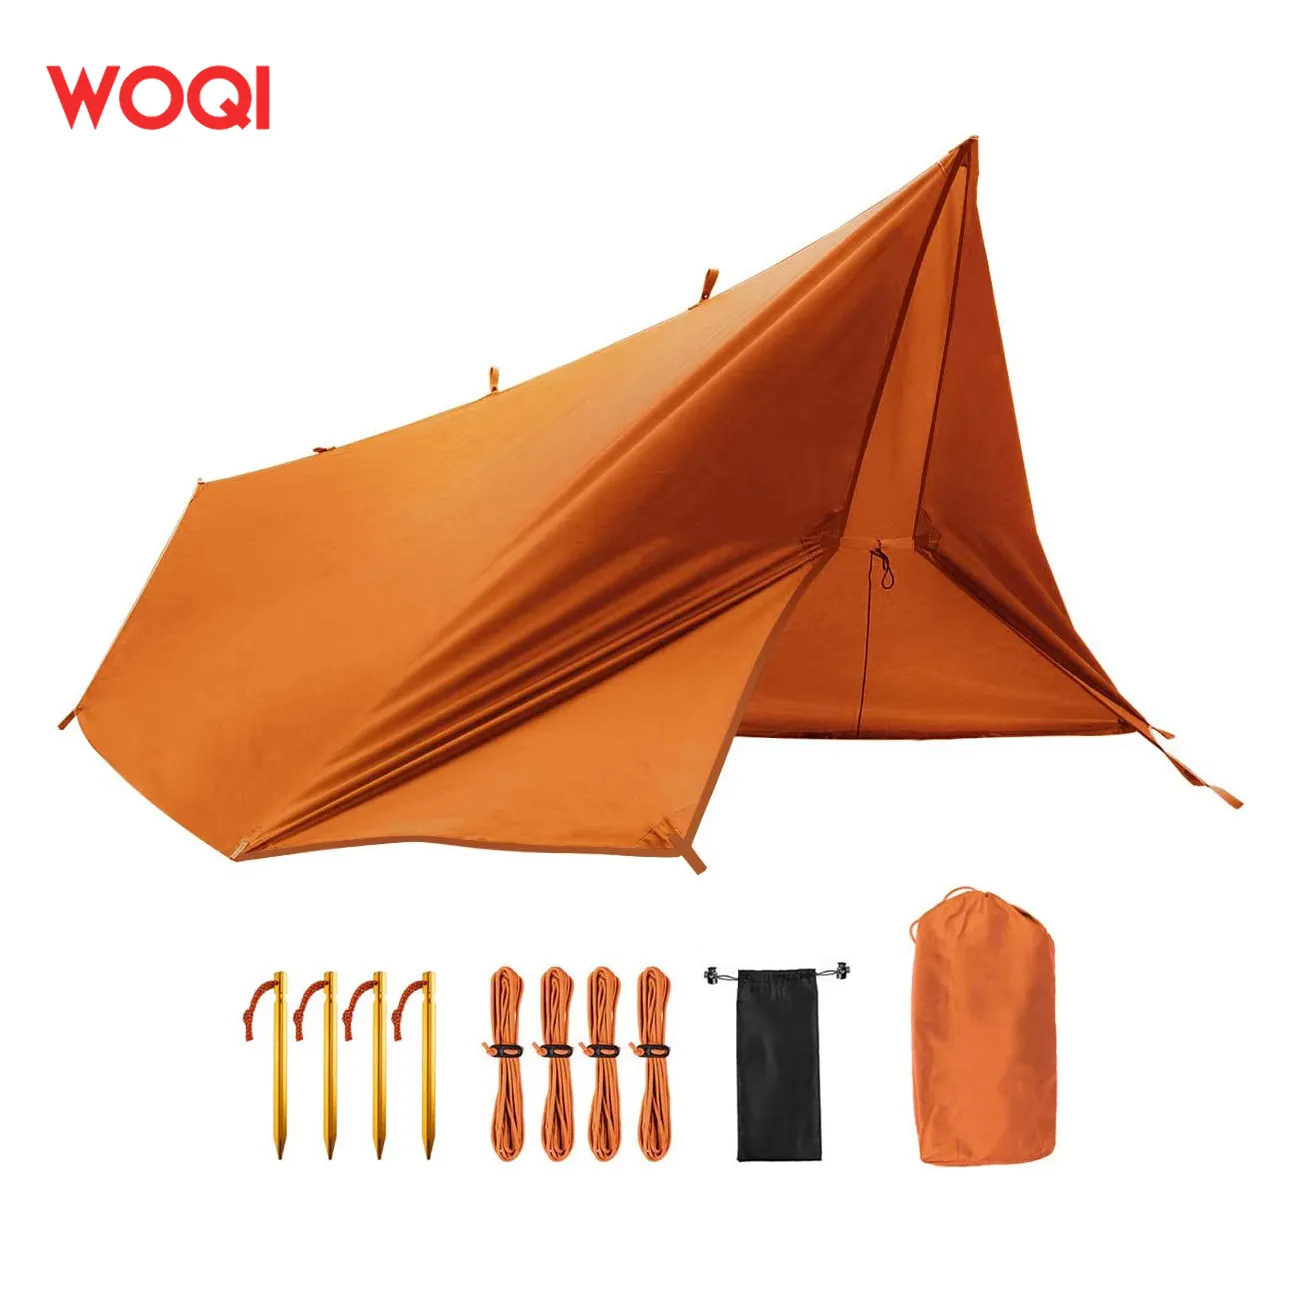 WOQI美しい色の屋外日よけハイキングコンパクトでポータブルで滑らかで耐久性のあるハンモック付きレインフライタープ